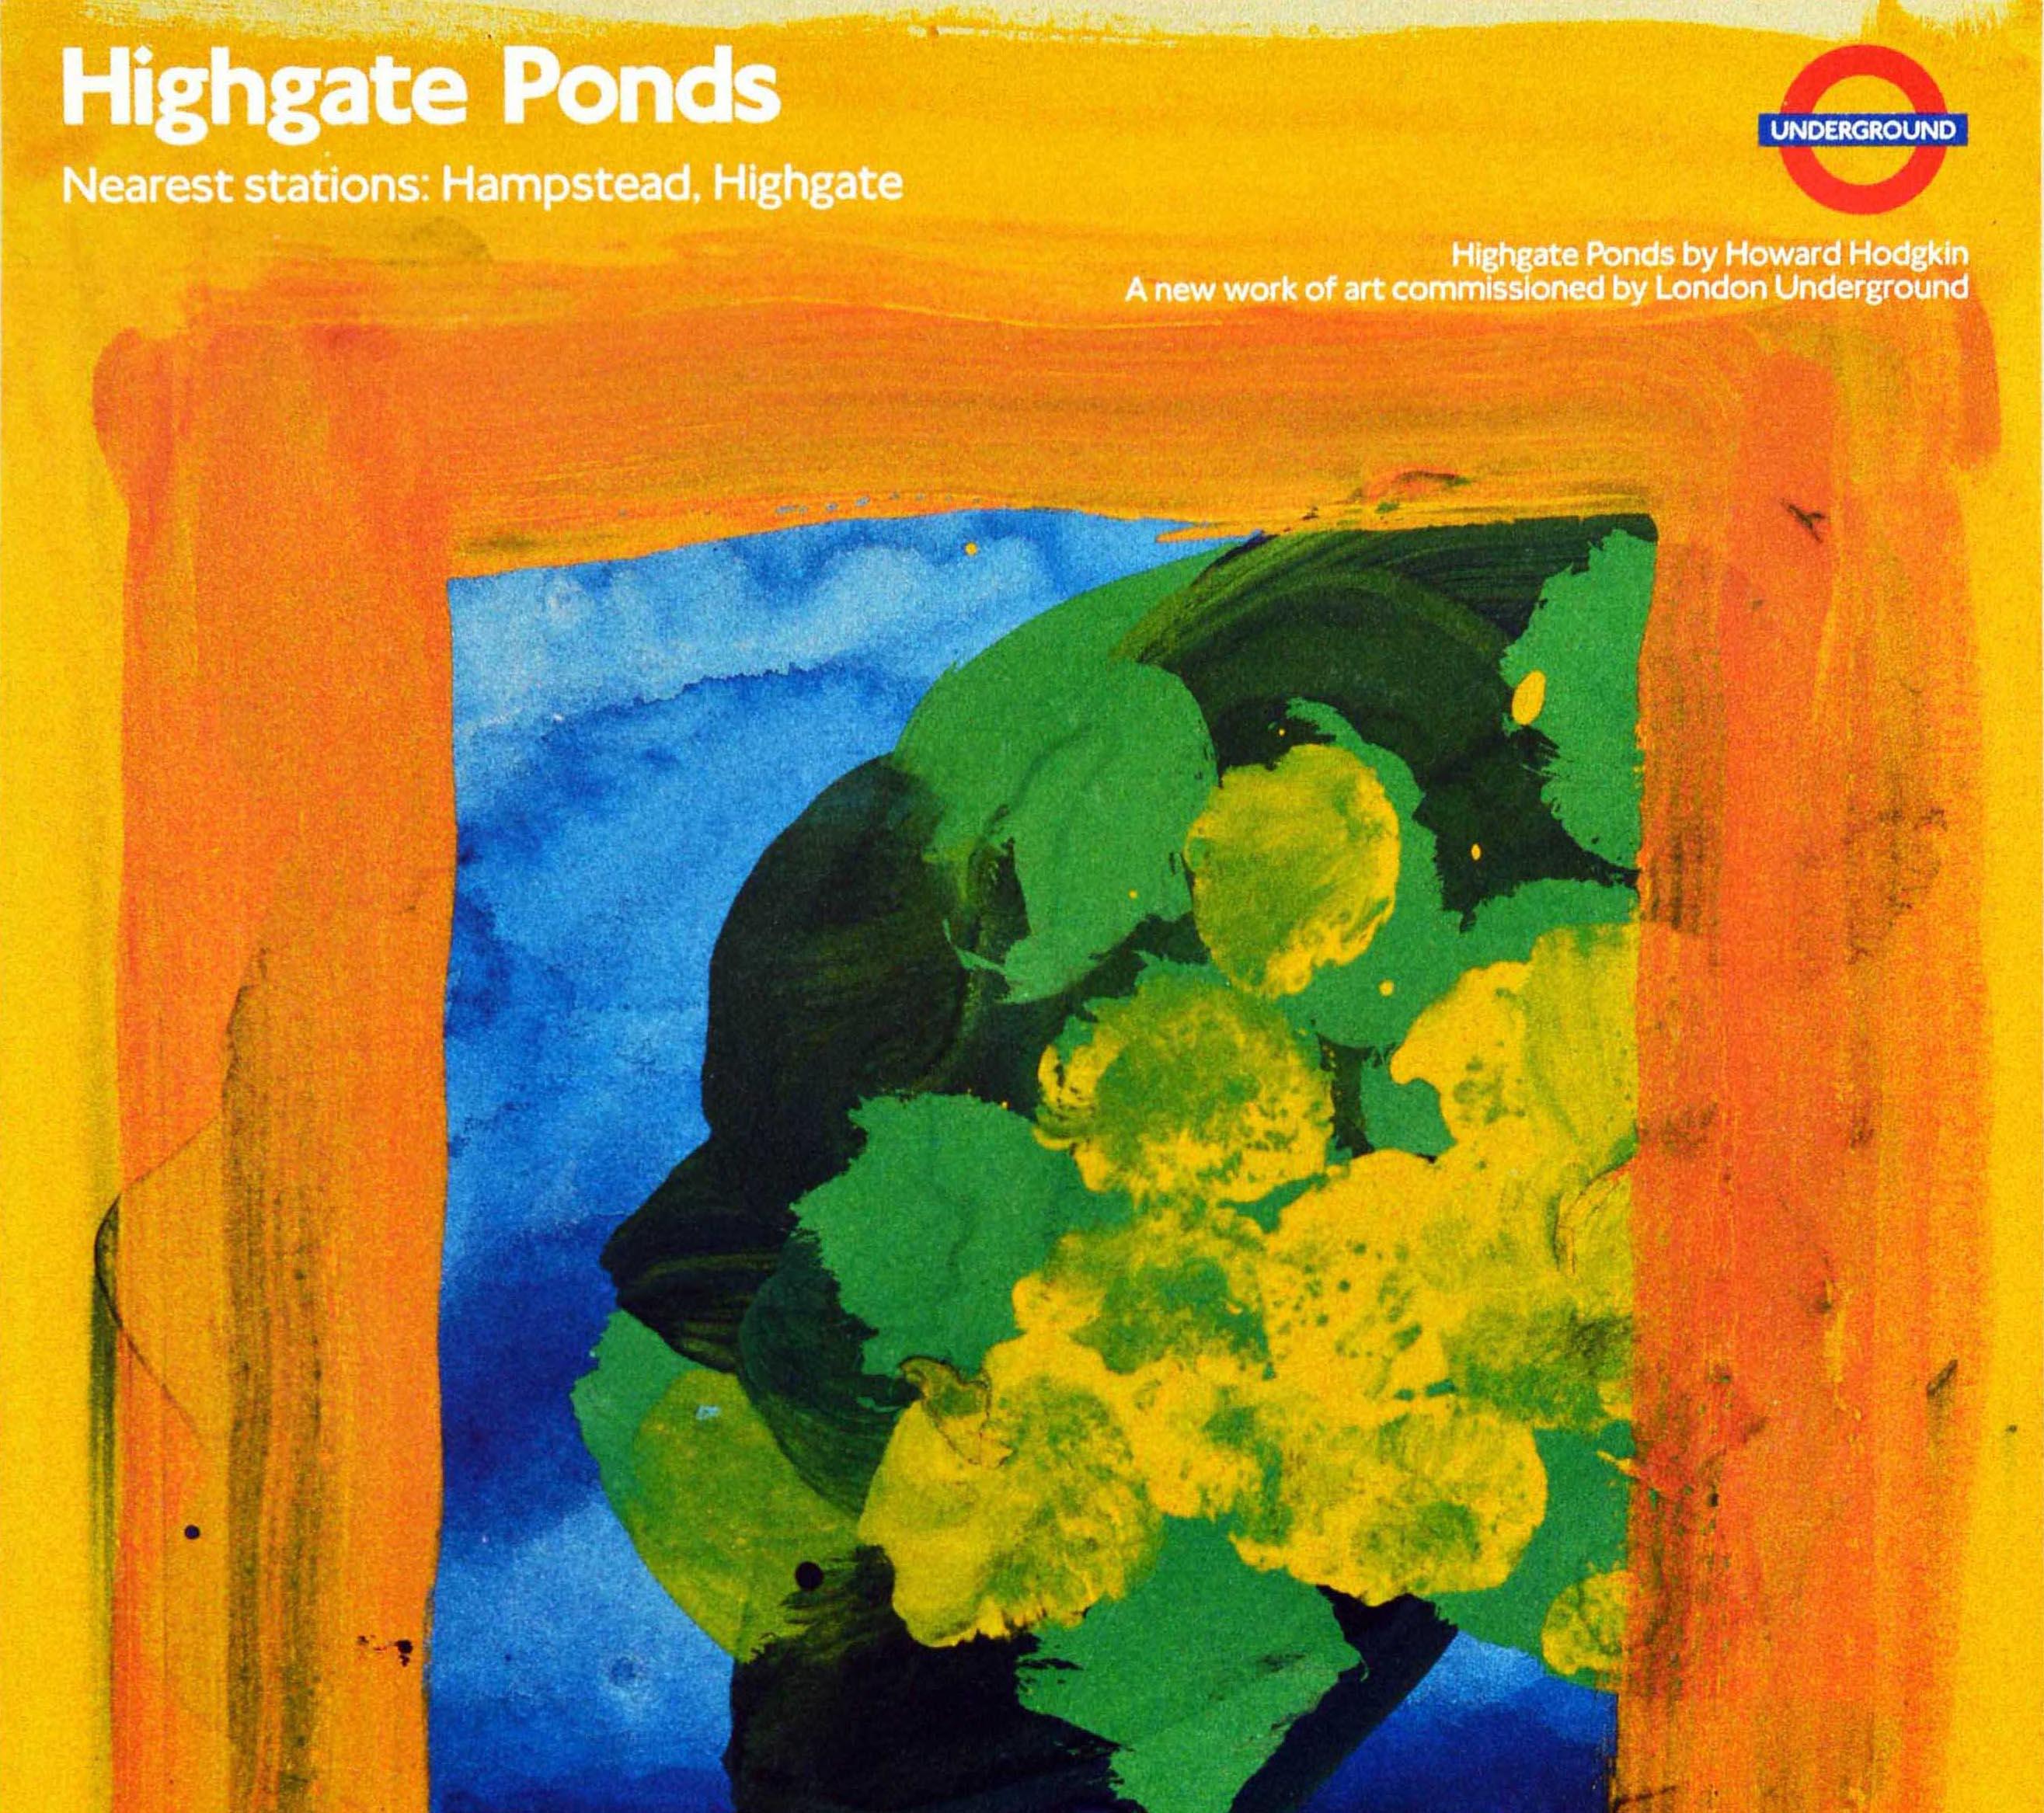 British Original Vintage London Underground Poster LT Highgate Ponds Howard Hodgkin Art For Sale